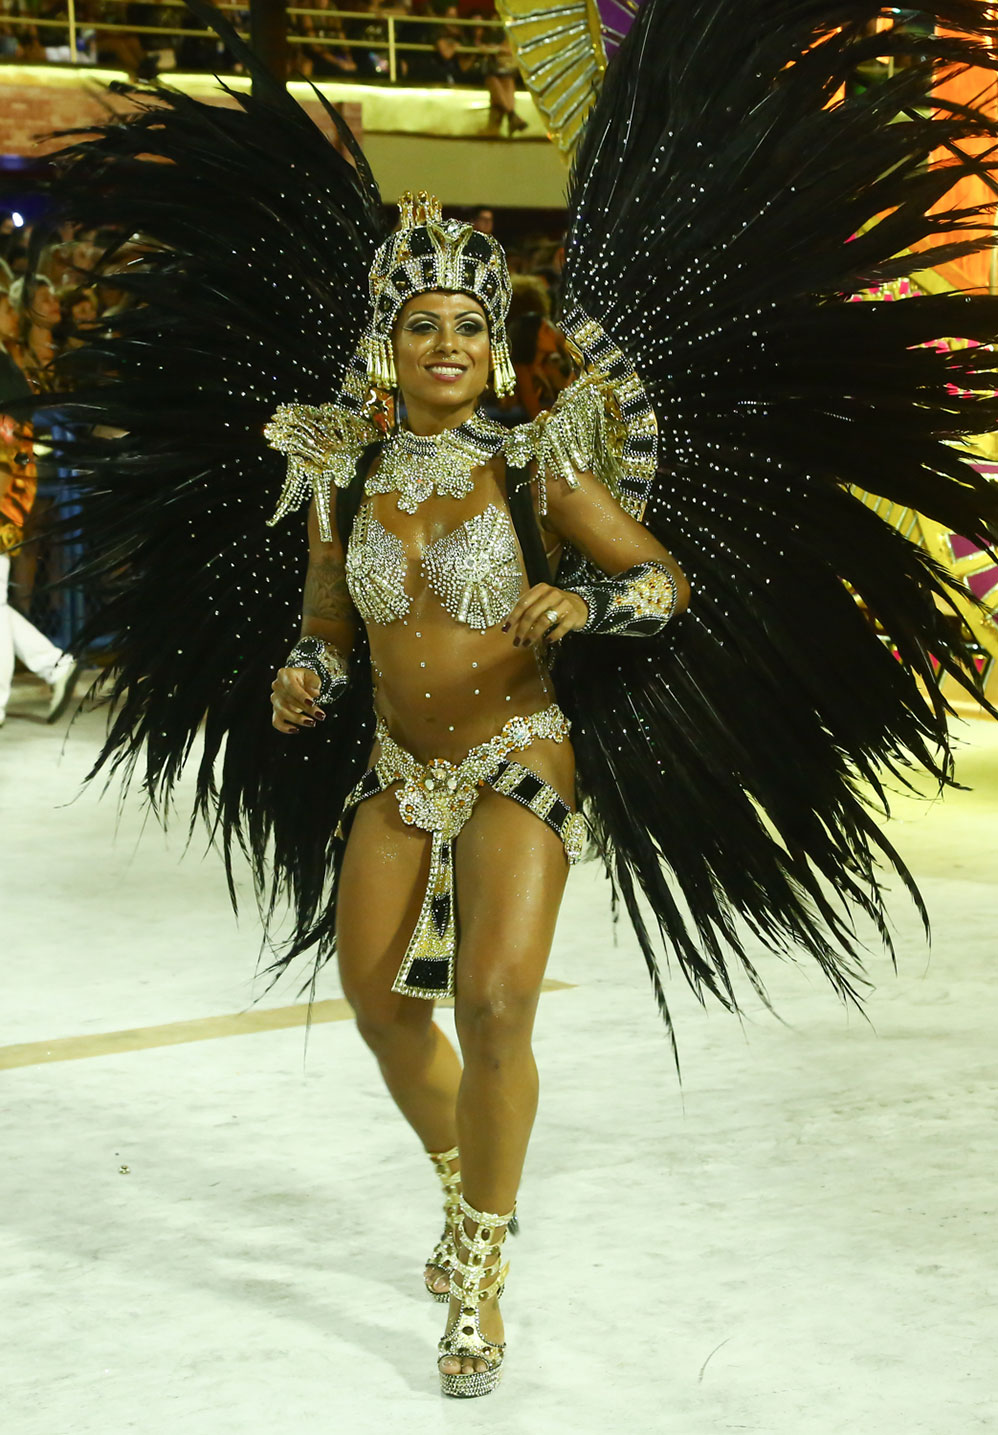 Confira os últimos desfiles das agremiações do Rio